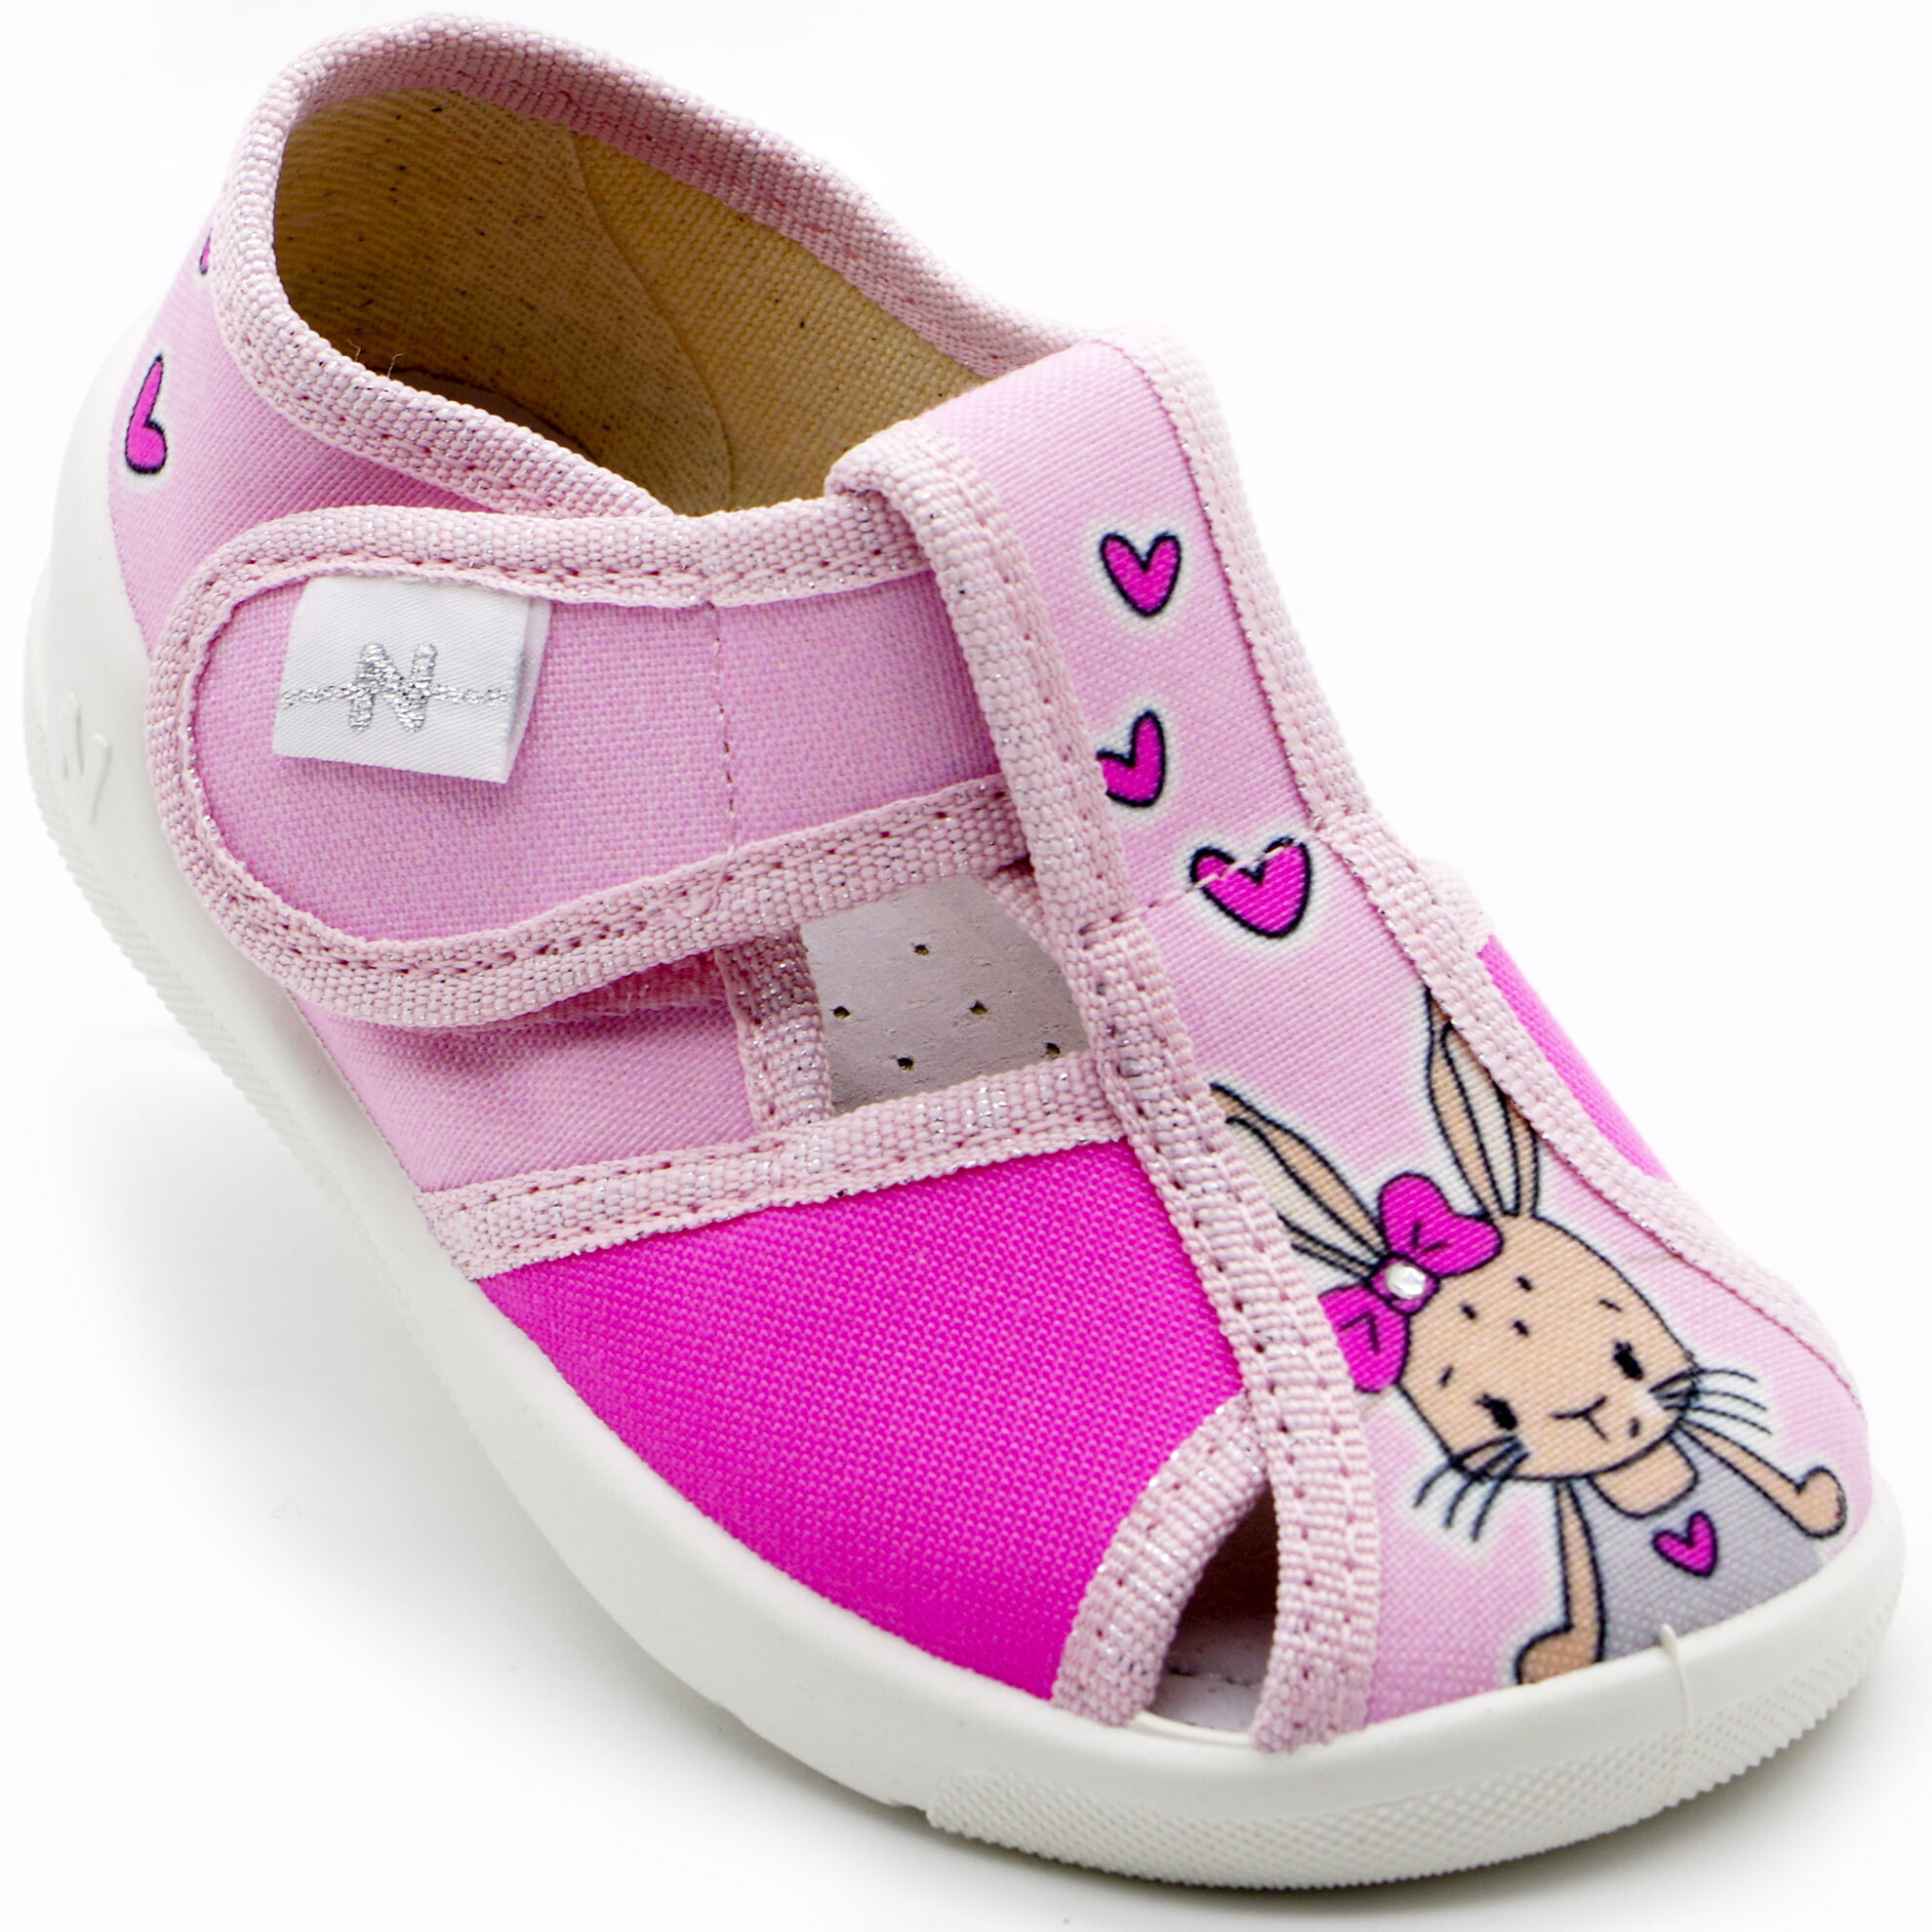 Текстильная обувь для девочек Тапочки Merlin (2205) цвет Розовый 18-25 размеры – Sole Kids